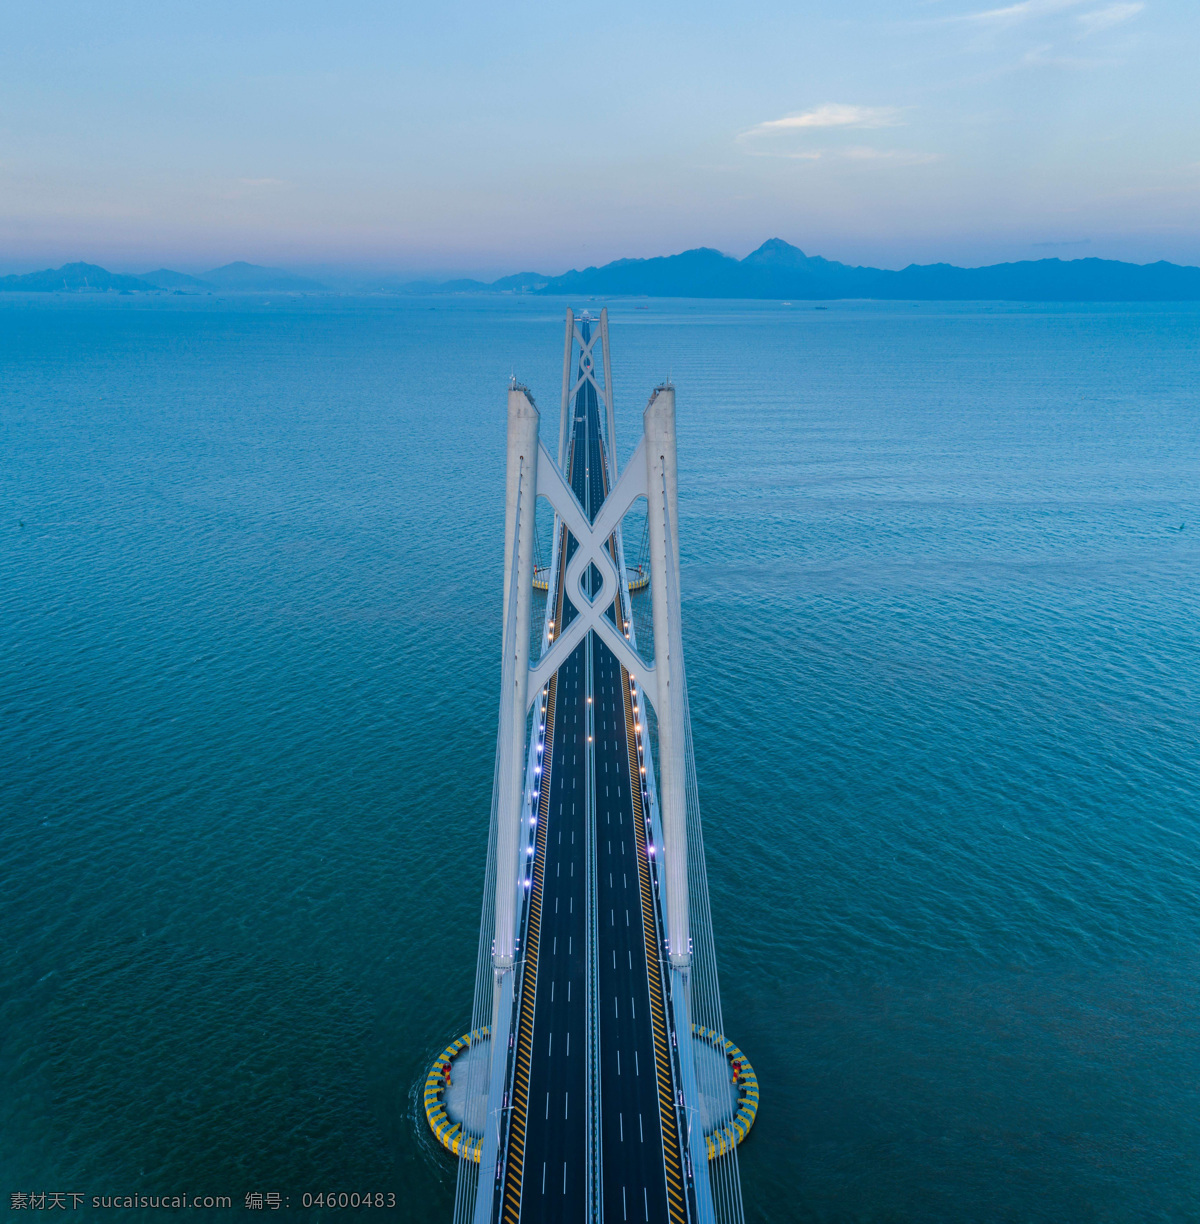 高清 港 珠 澳 大桥 工程 背景 港珠澳 旅游摄影 人文景观